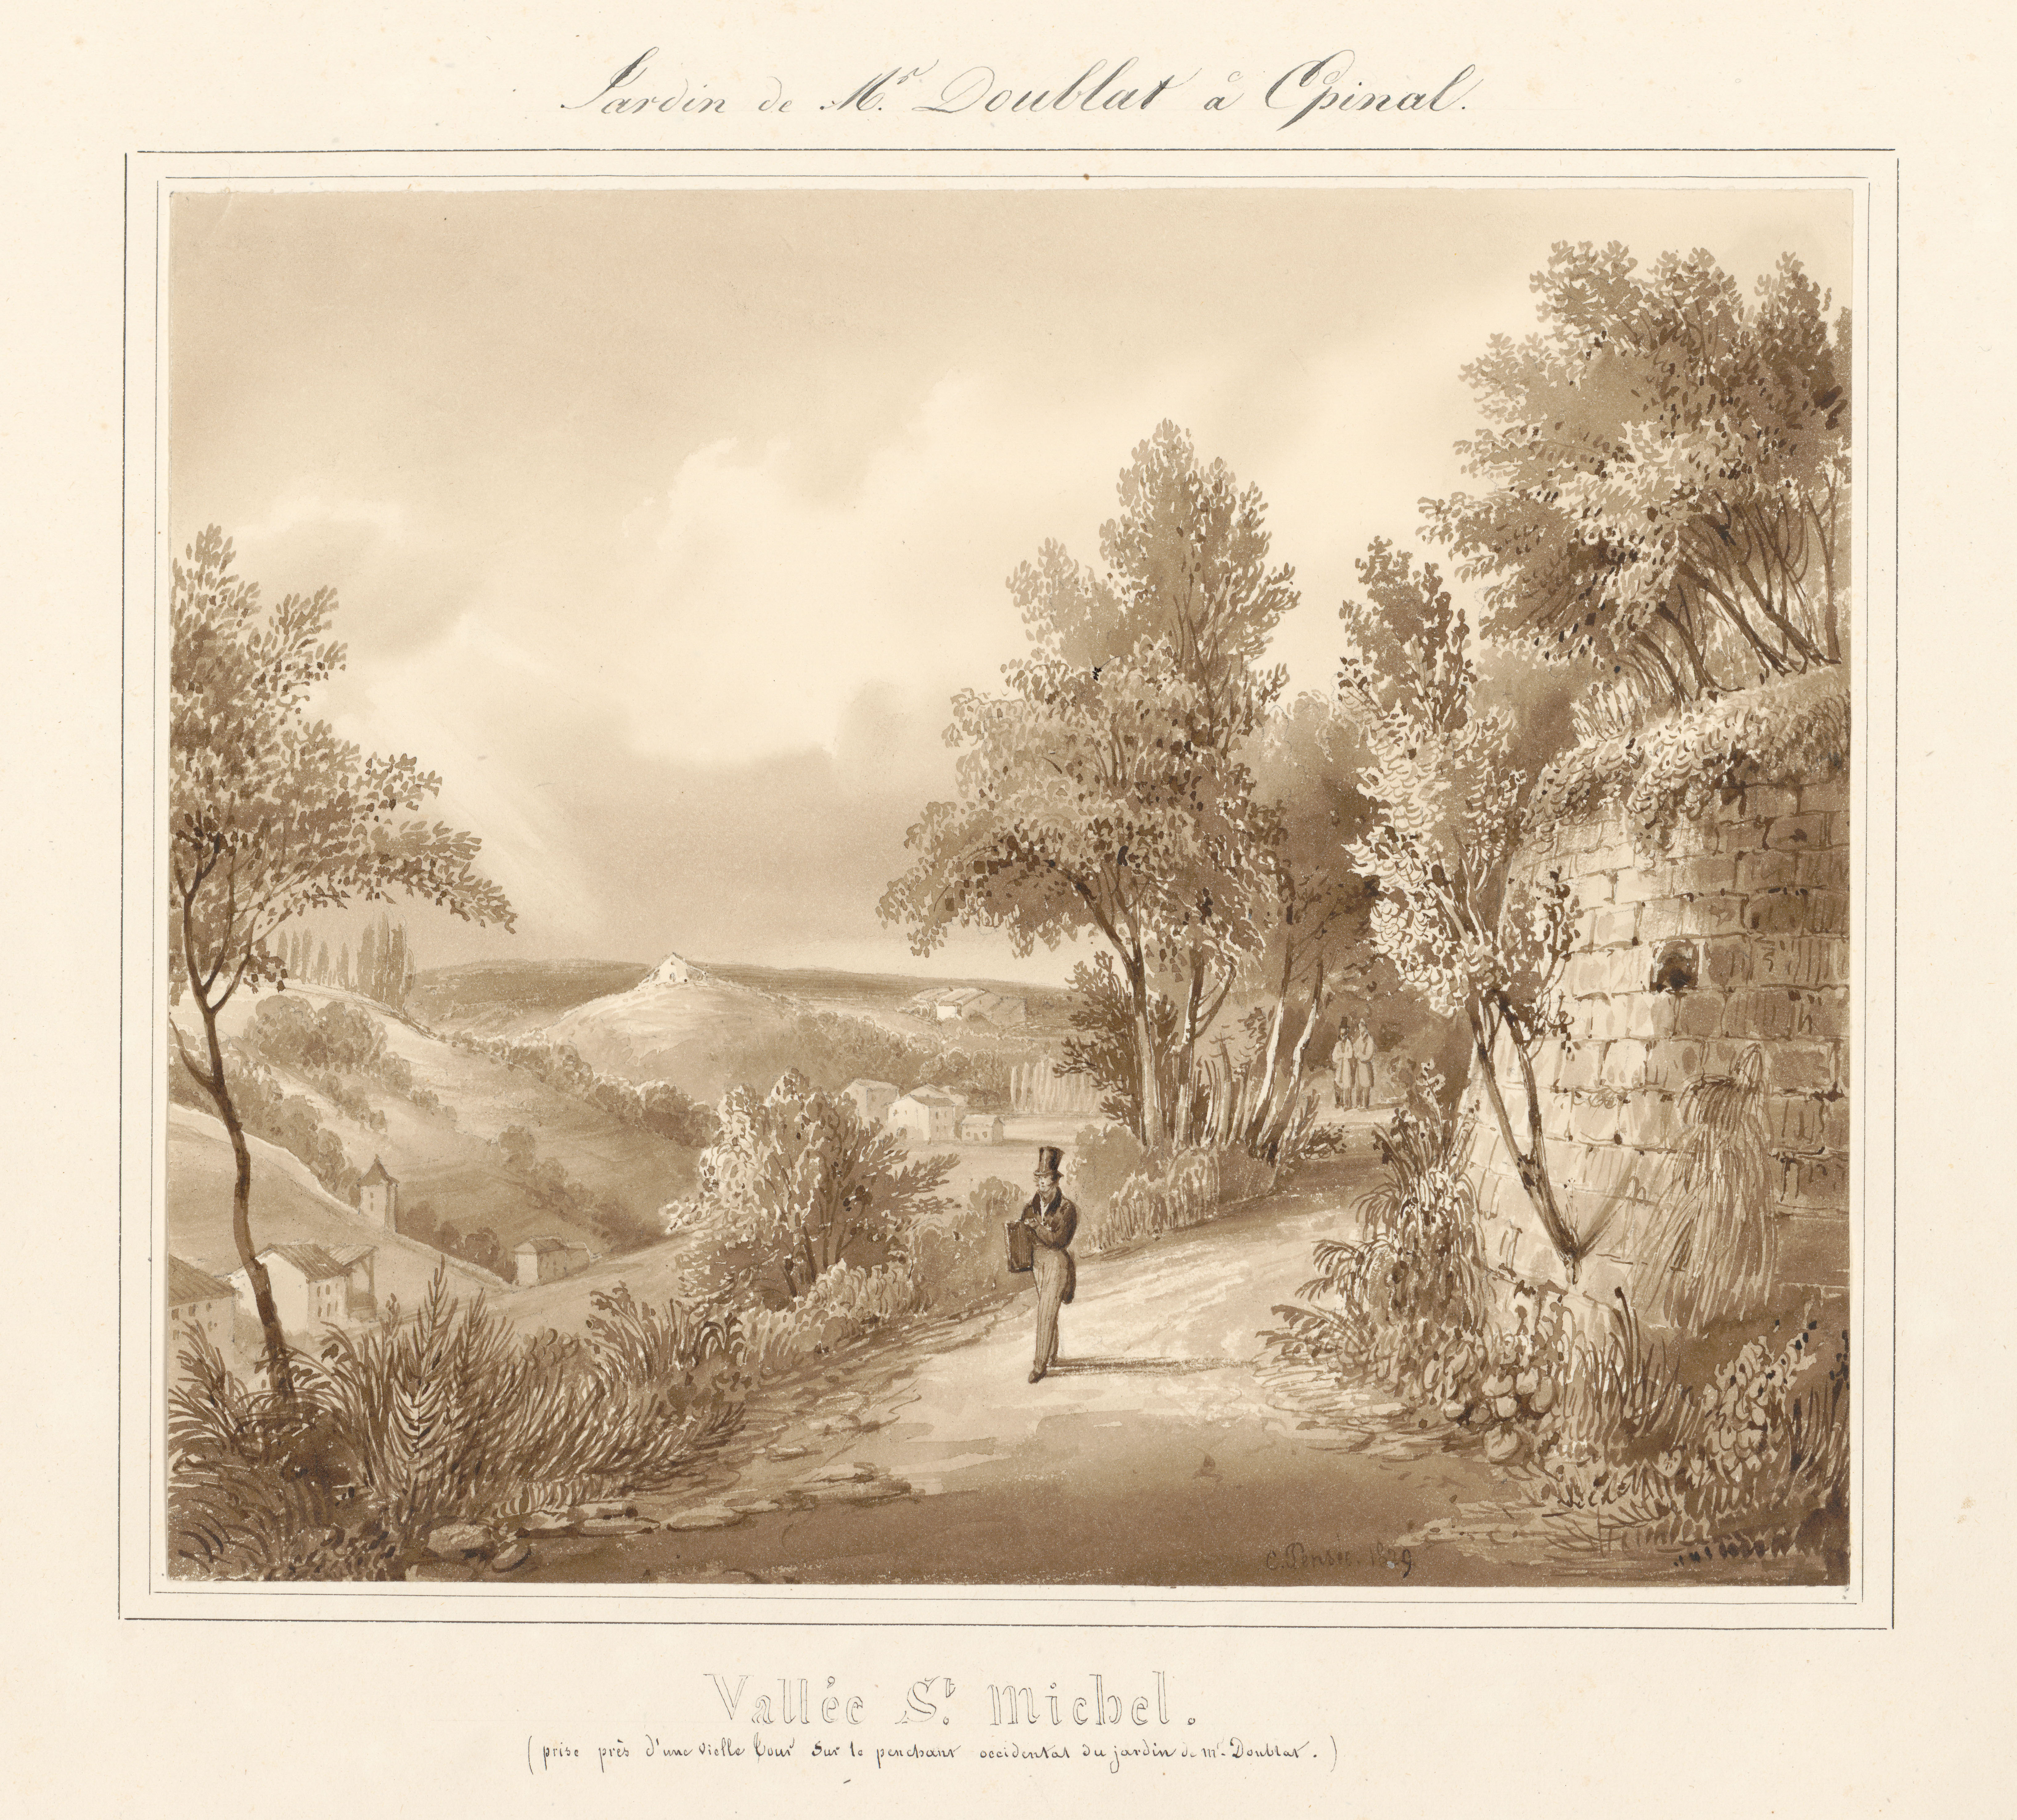 Contenu du Le château d'Epinal : Vallée Saint-Michel (prise près d'une vieille cour sur le penchant occidental du jardin de Mr Doublat), par Charles Pensée en 1829